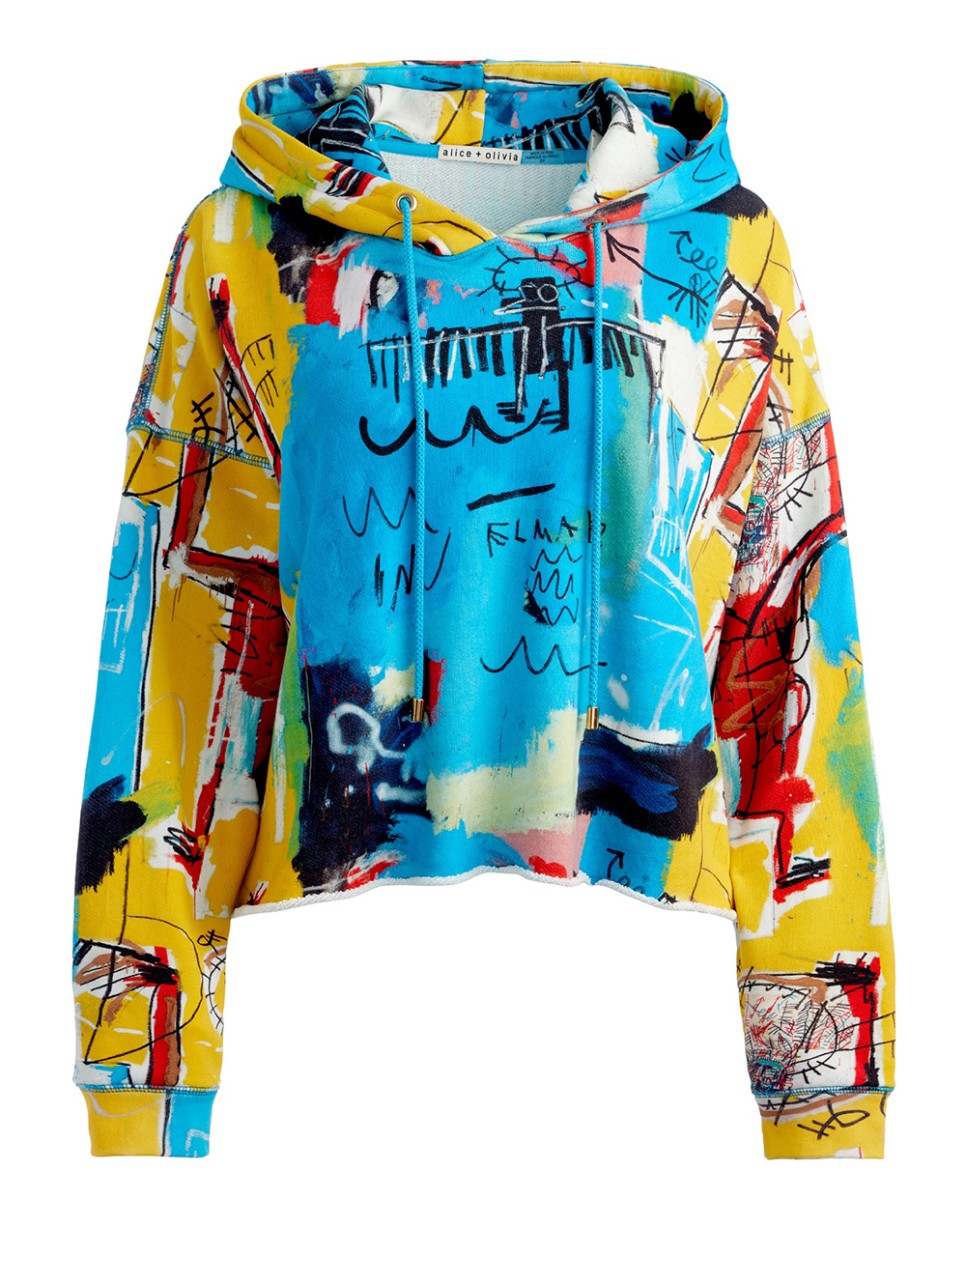 앨리스앤올리비아 X 장 미쉘 바스키아 (alice + olivia X Jean-Michel Basquiat) 캡슐 컬렉션 연말룩으로 좋아!